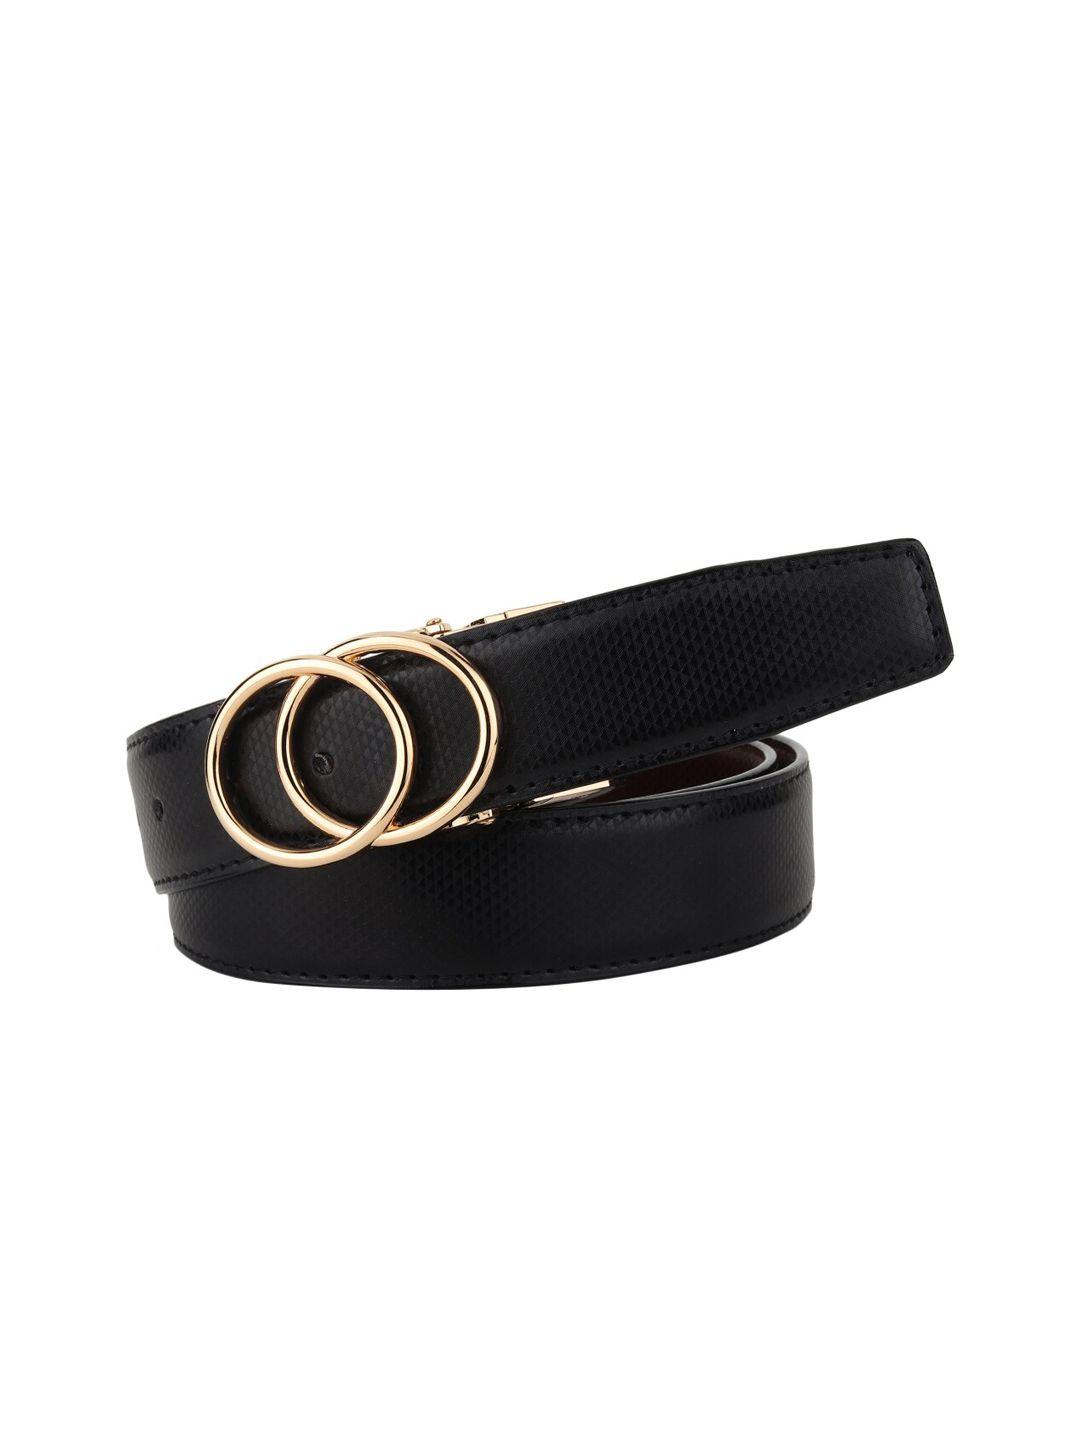 elite crafts men gold-toned & black solid casual belt